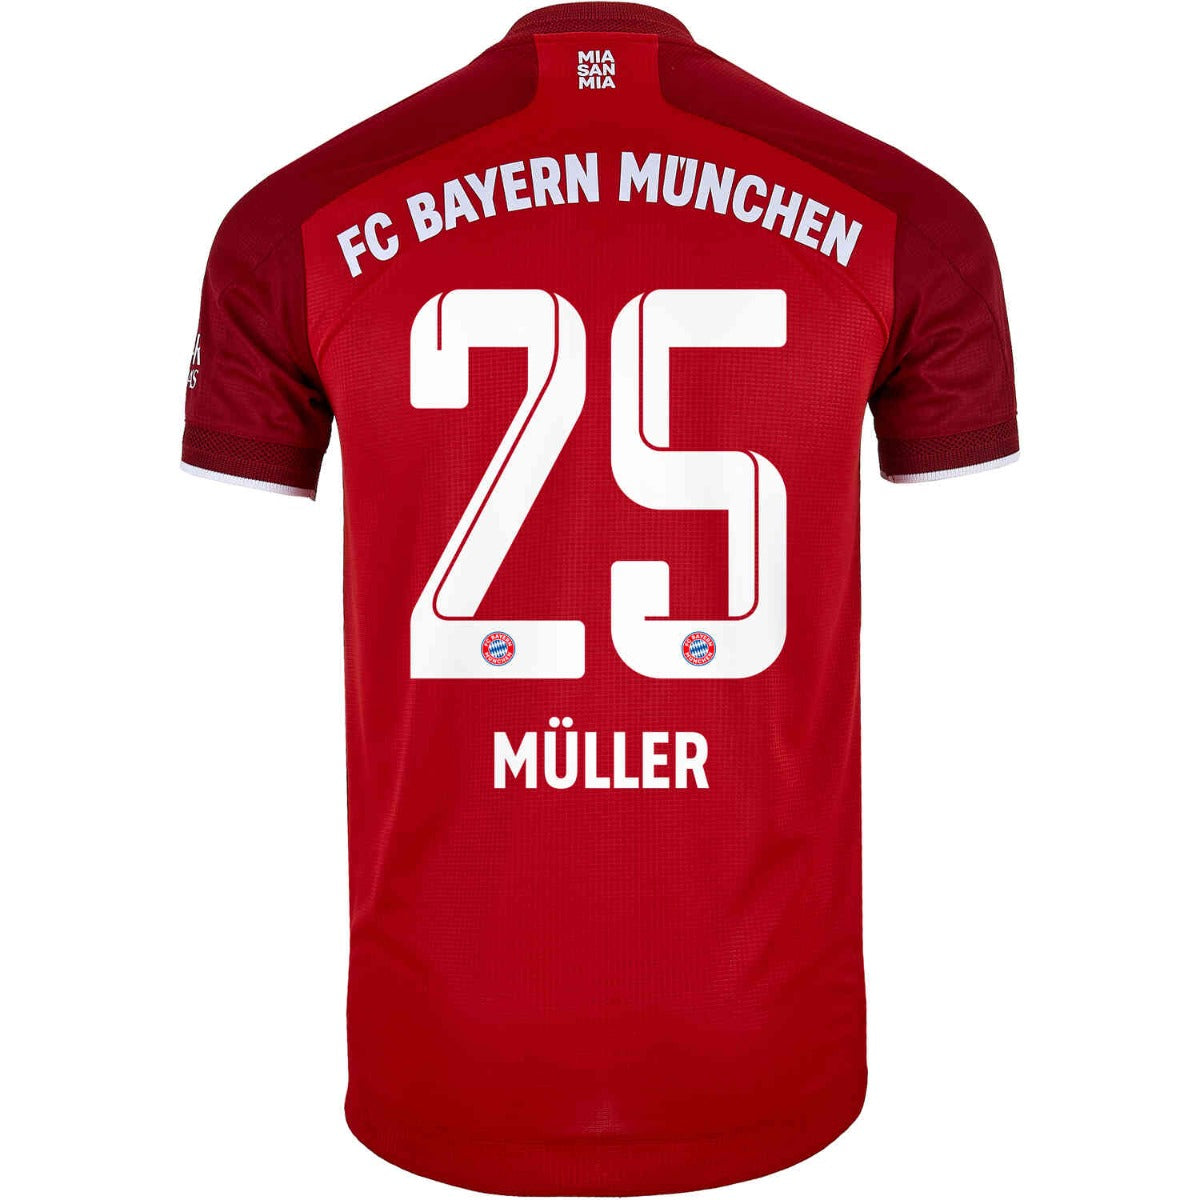 Adidas, Maglia Adidas 2021-22 Bayern Monaco - Rosso scuro